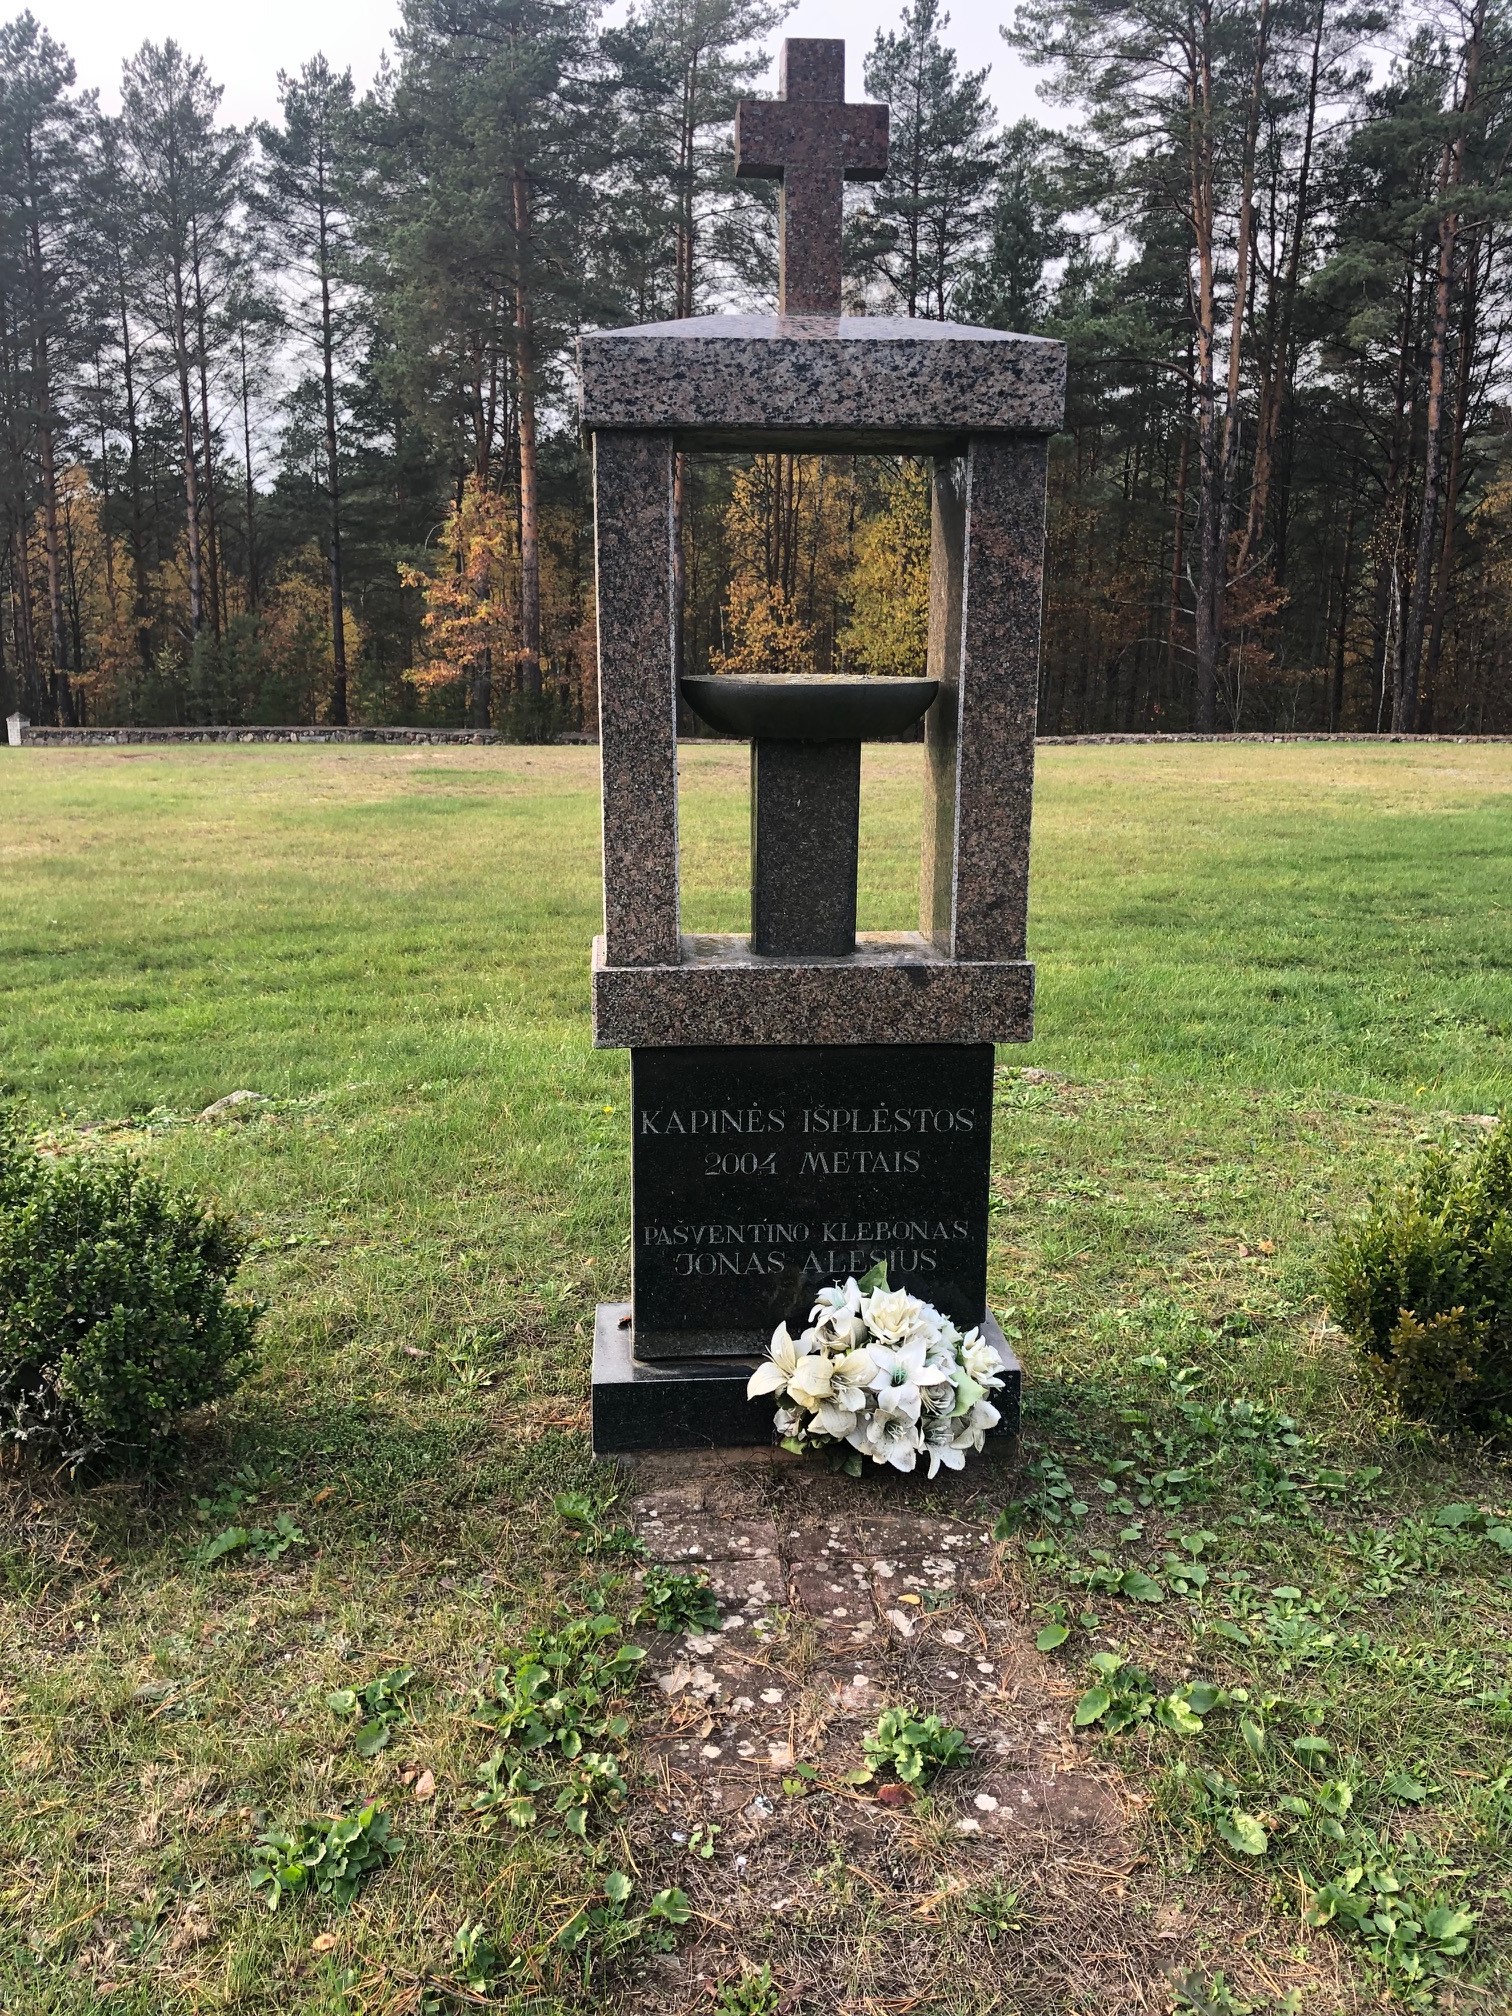 Leipalingio miestelio kapinės, Druskininkų savivaldybė Gallery photo